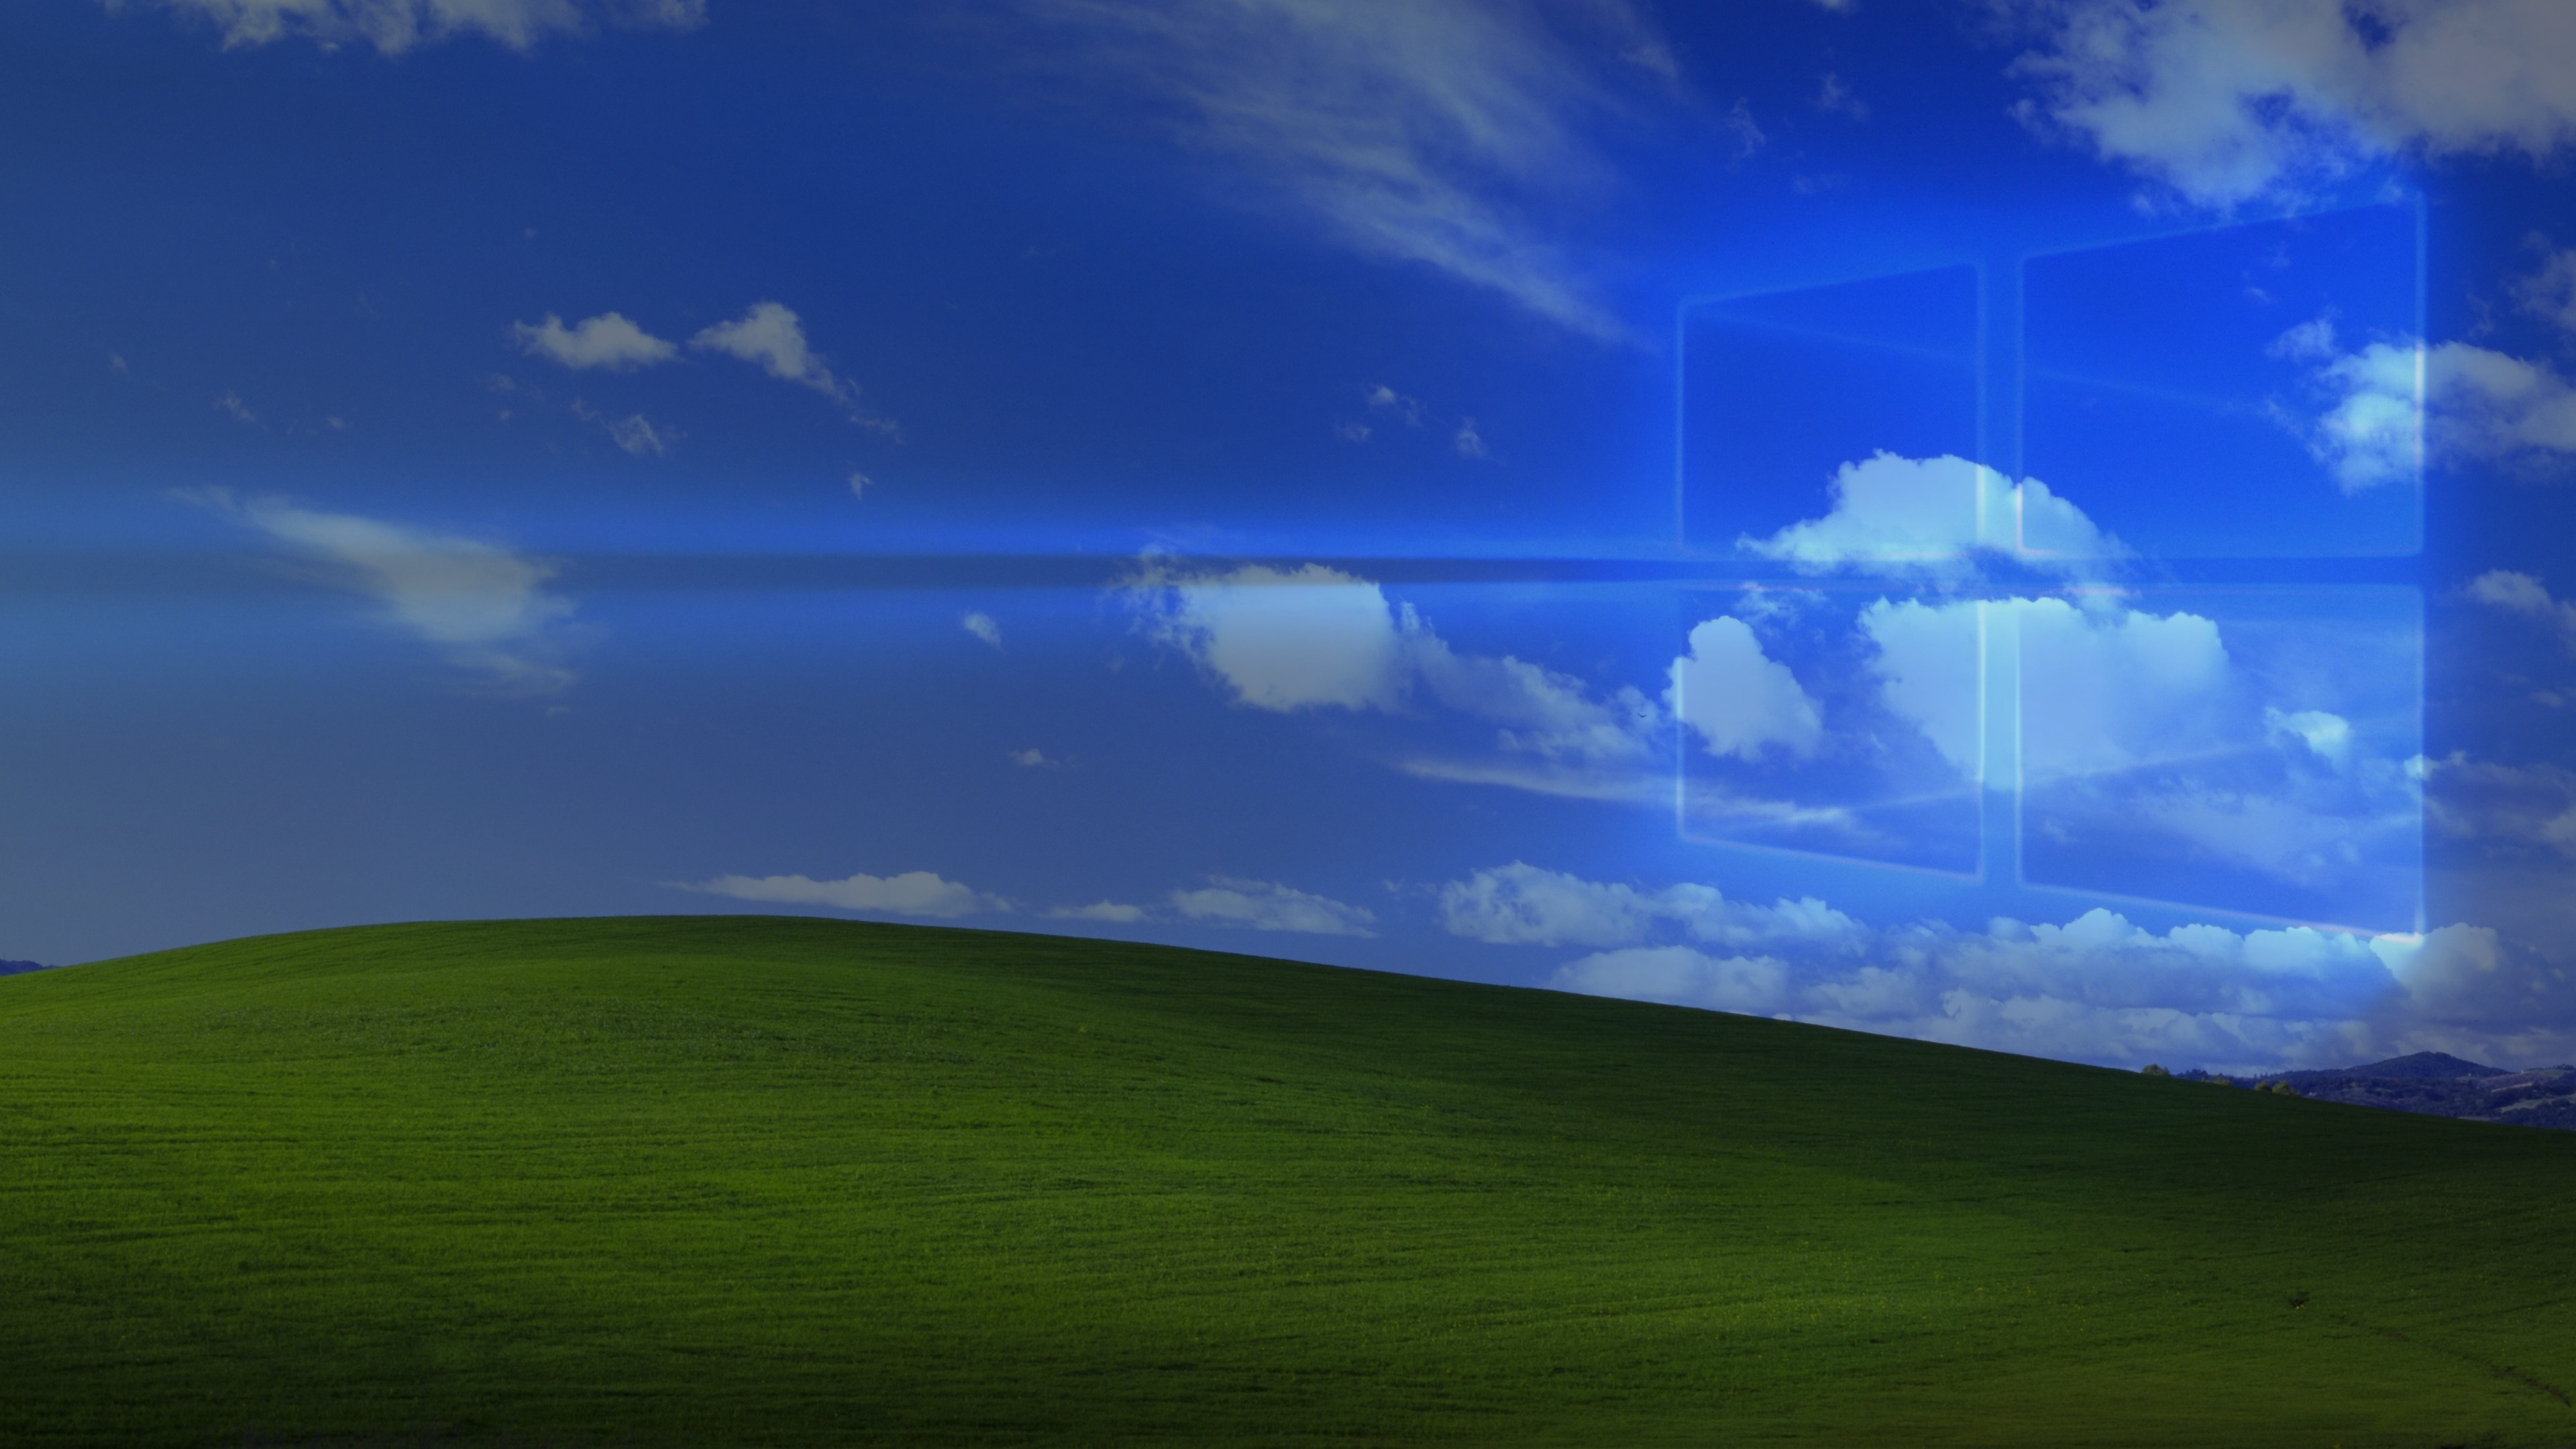 Hãy cùng tìm hiểu hình nền Windows XP 10 độc đáo nhất với độ phân giải 4K được thiết kế bởi focusentertainment69 trên DeviantArt. Hình nền này sẽ khiến cho màn hình của bạn trở nên nổi bật và ấn tượng hơn bao giờ hết.